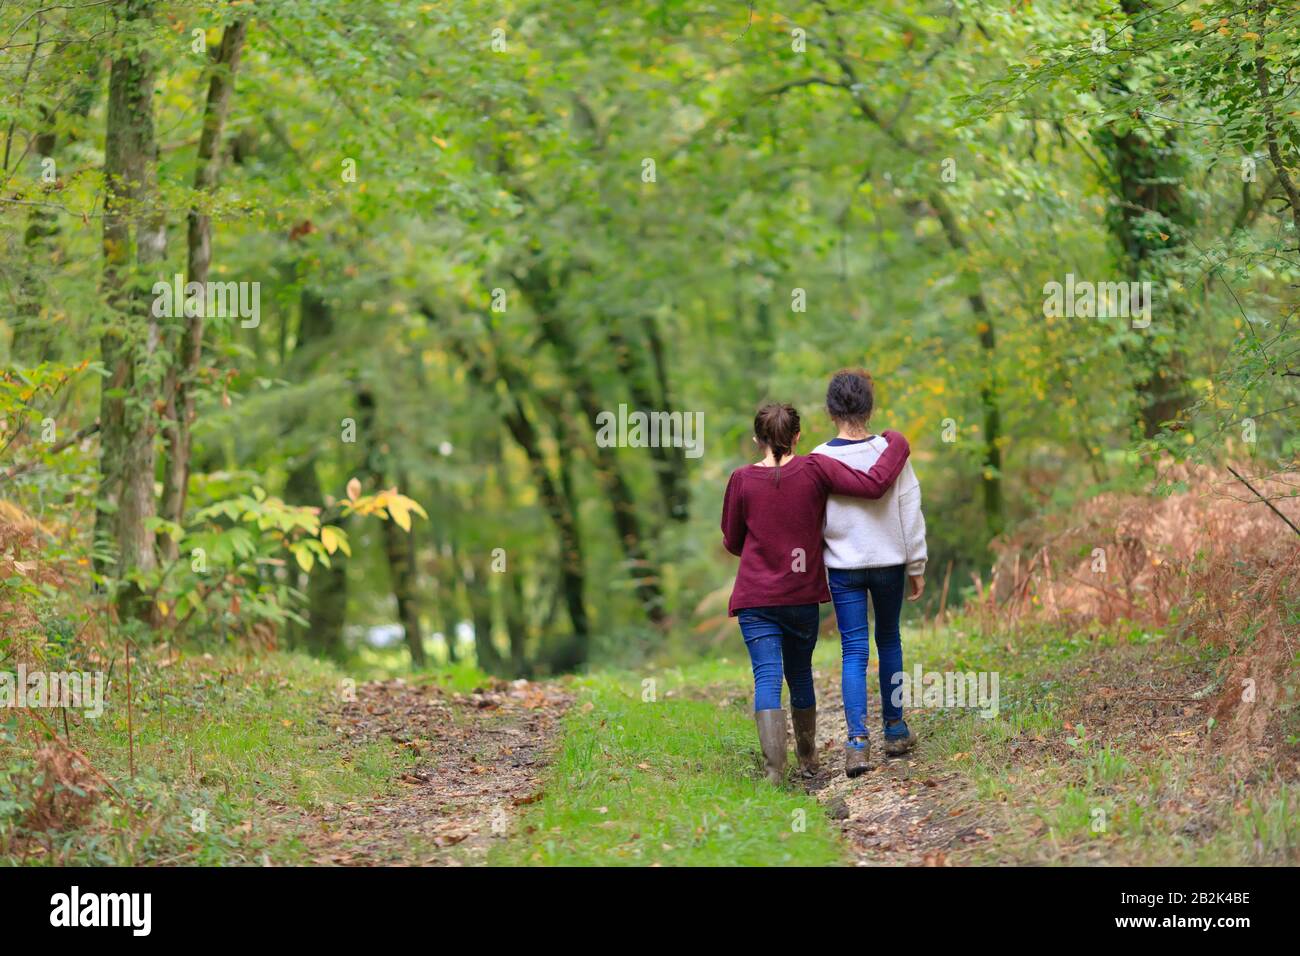 Deux adolescents non identifiés embrassant et marchant dans une forêt tempérée. Banque D'Images